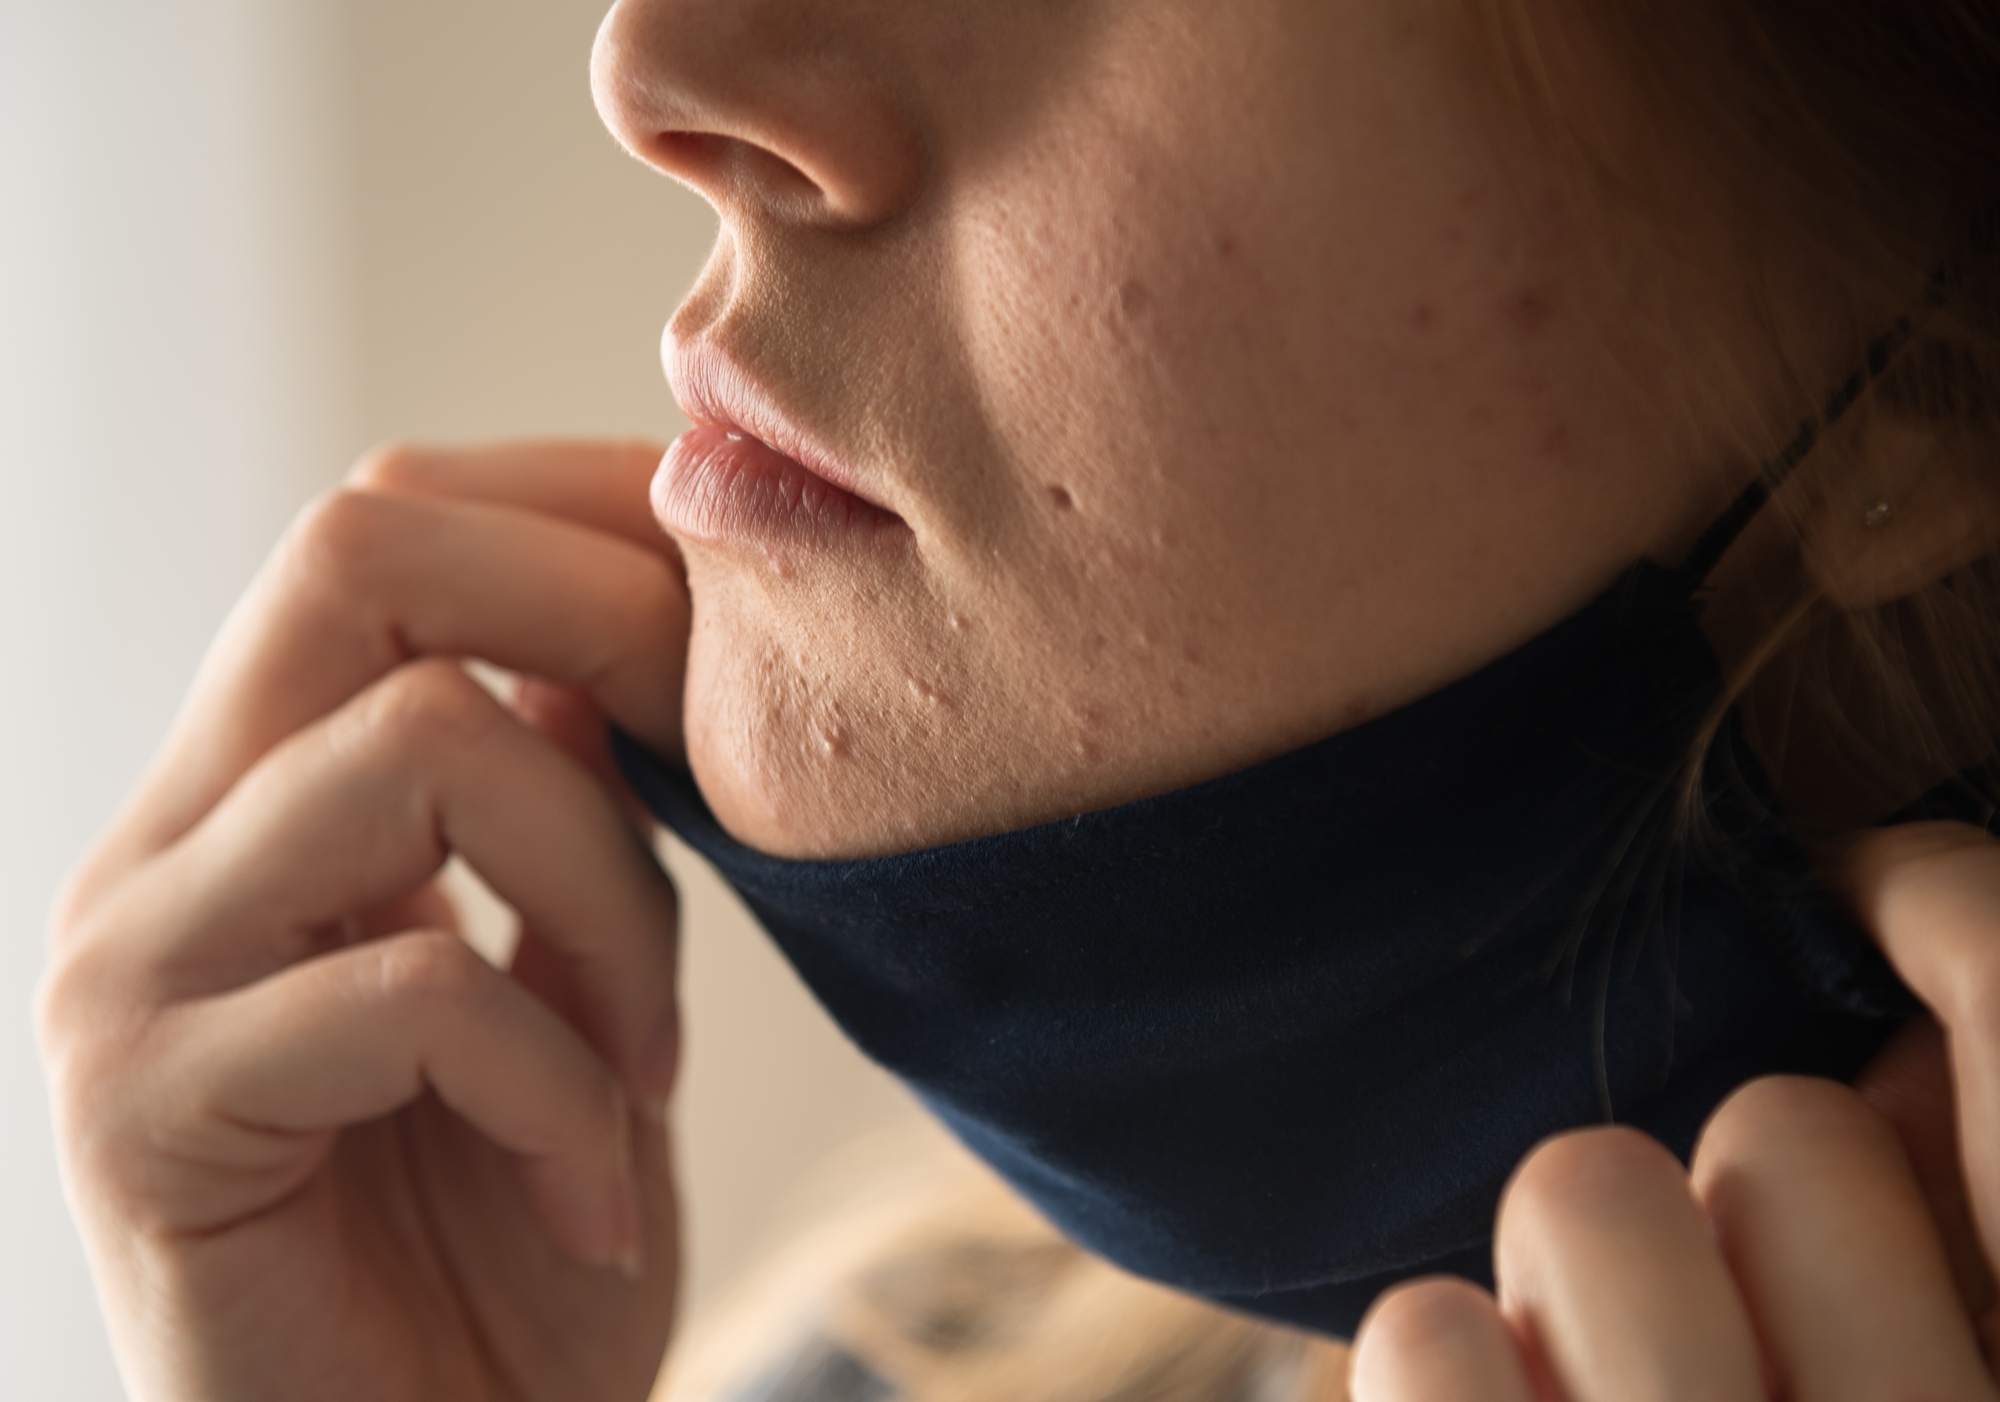 口罩痘maskne在這一年是全球的熱門關鍵字，其中長時間戴口罩的摩擦是造成粉刺和痘痘的主因